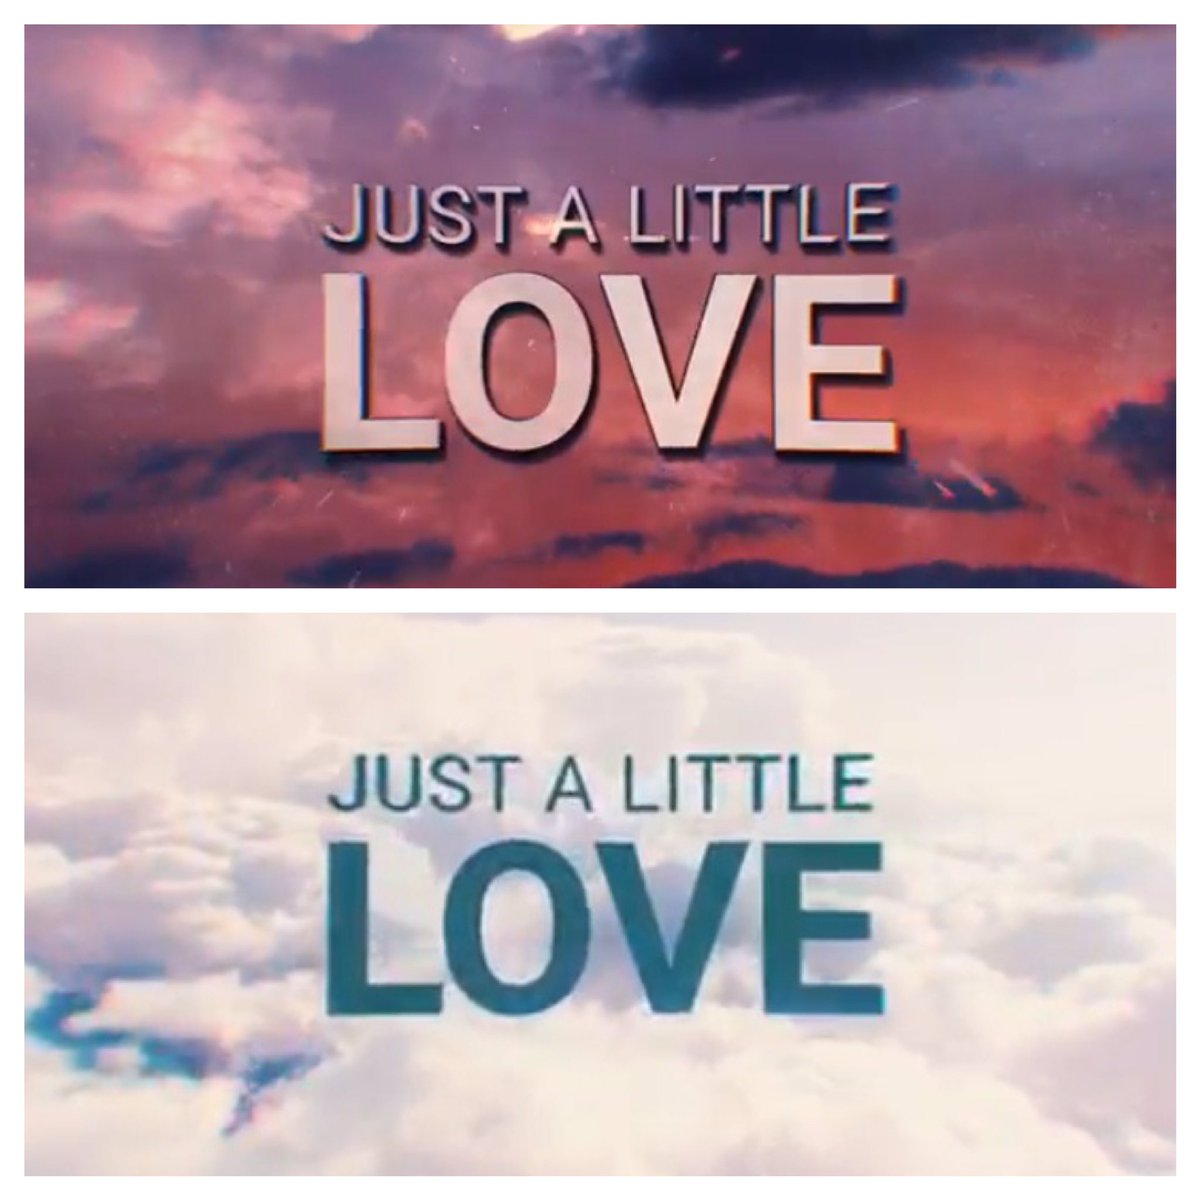 #Erasure #JustALittleLove lyric video now on YouTube:
youtu.be/yfz2m27acsE